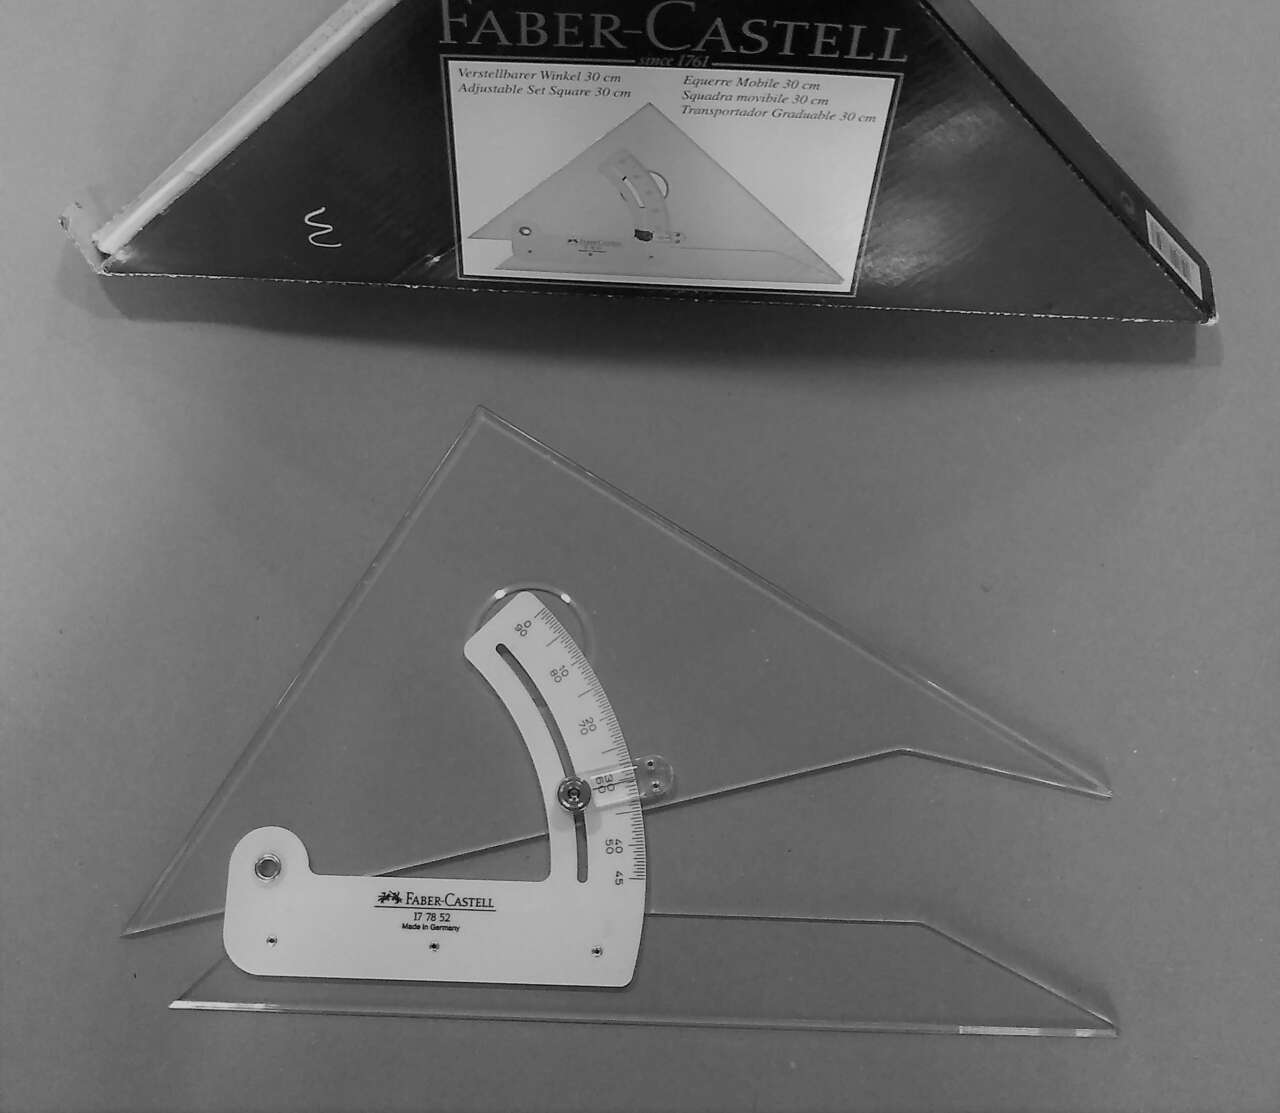 Set Faber Castell Cartabon, Escuadra y Transportador